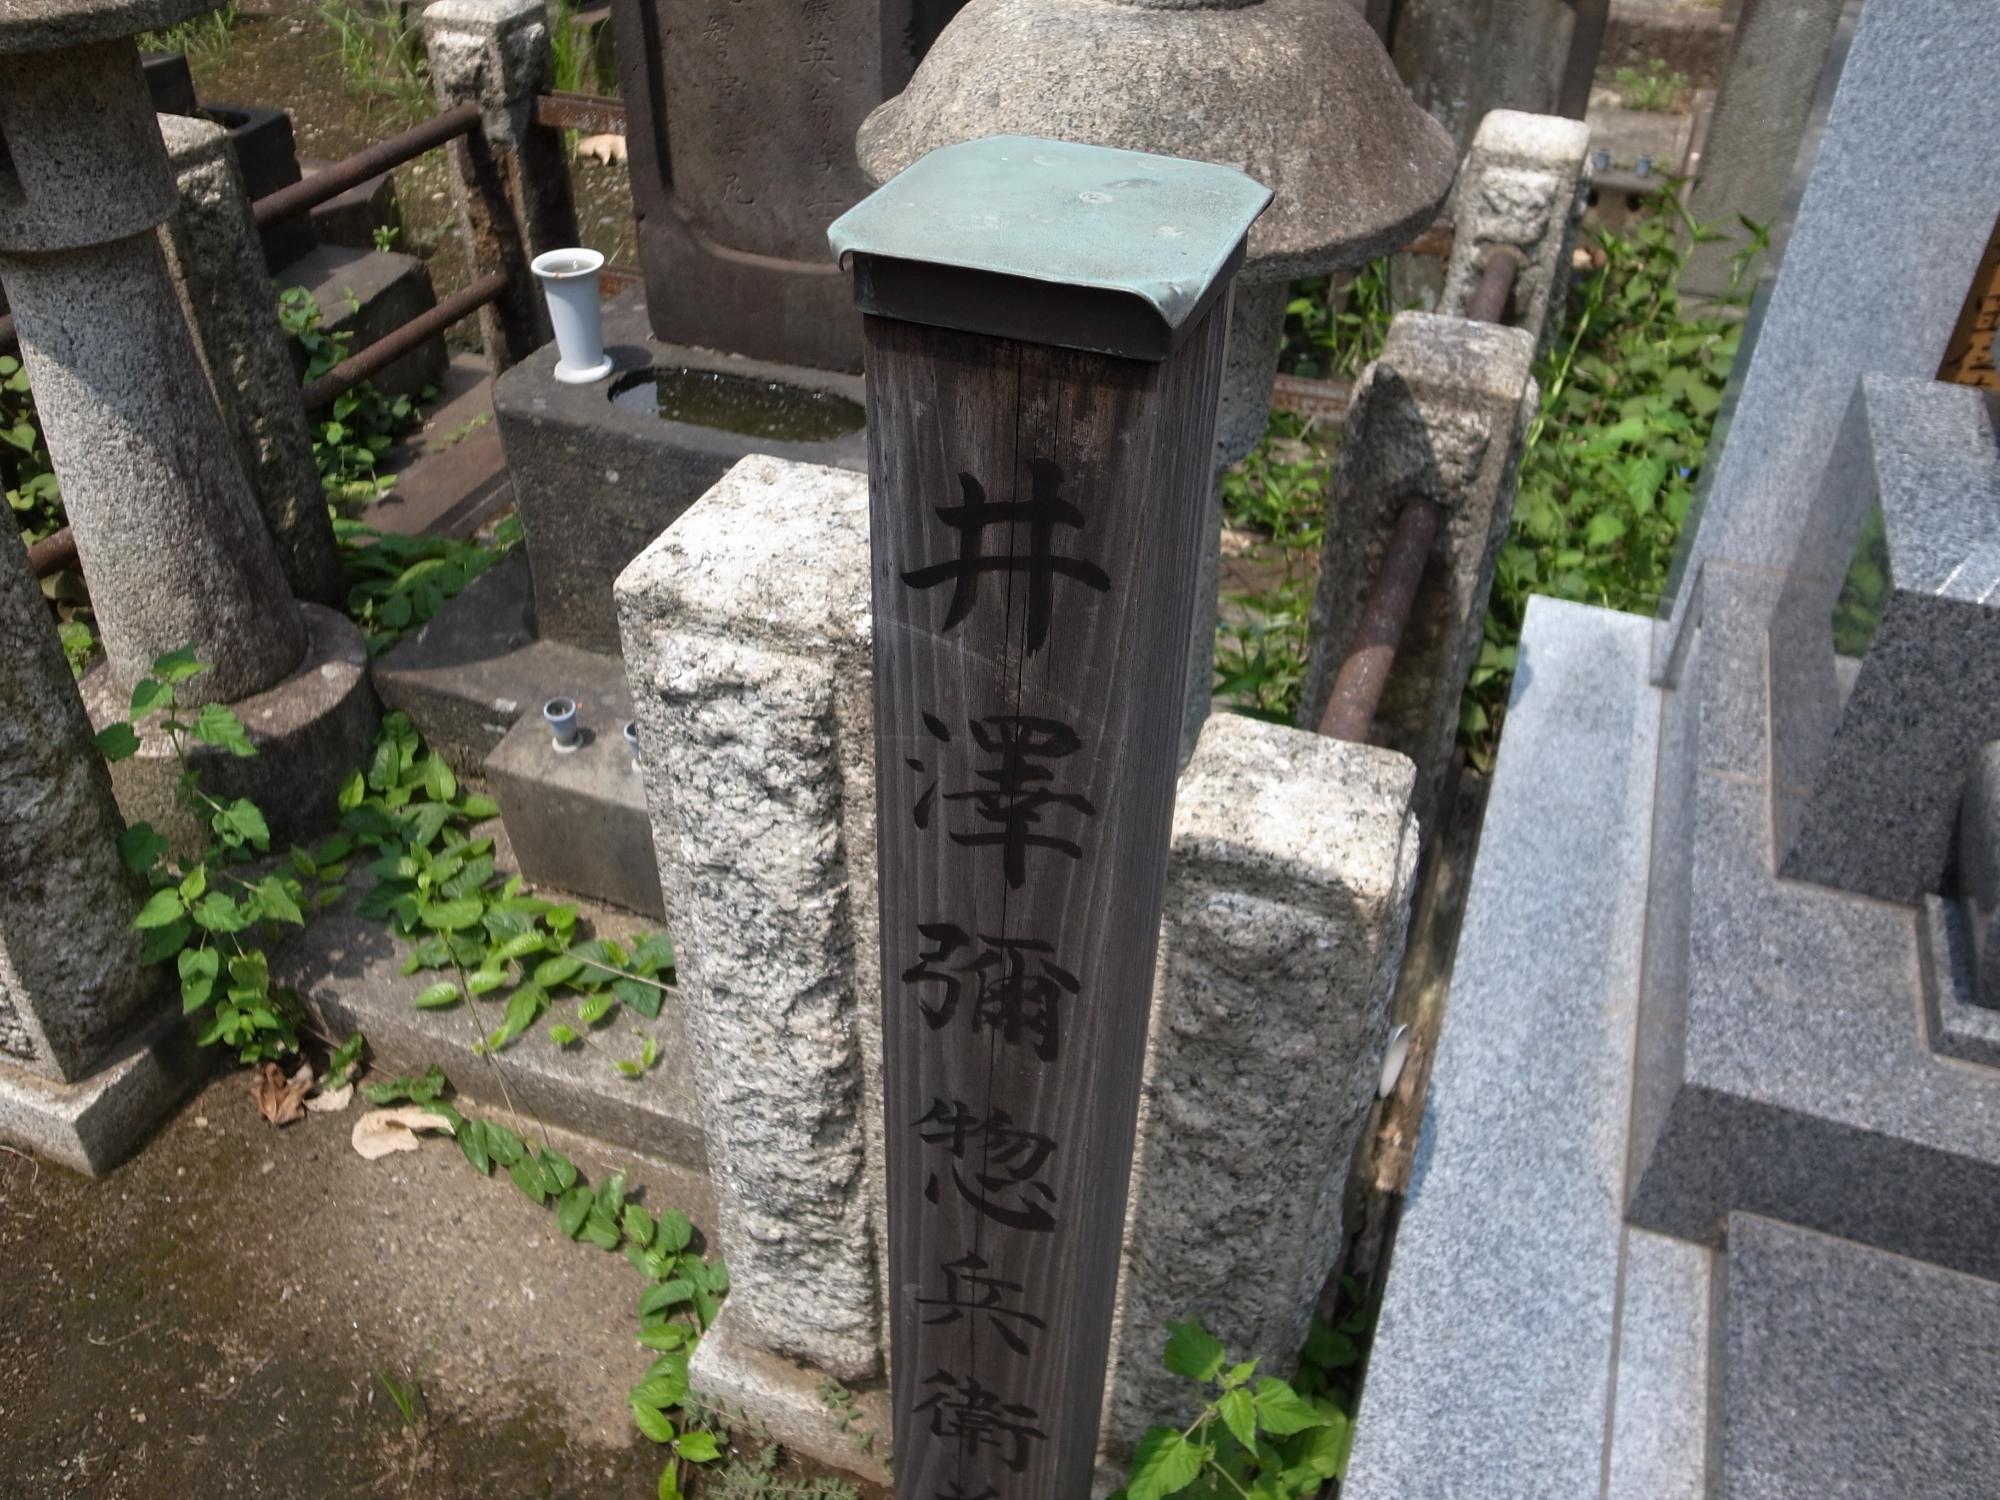 井澤弥総兵衛の名前が描かれた墓碑を上から写した写真